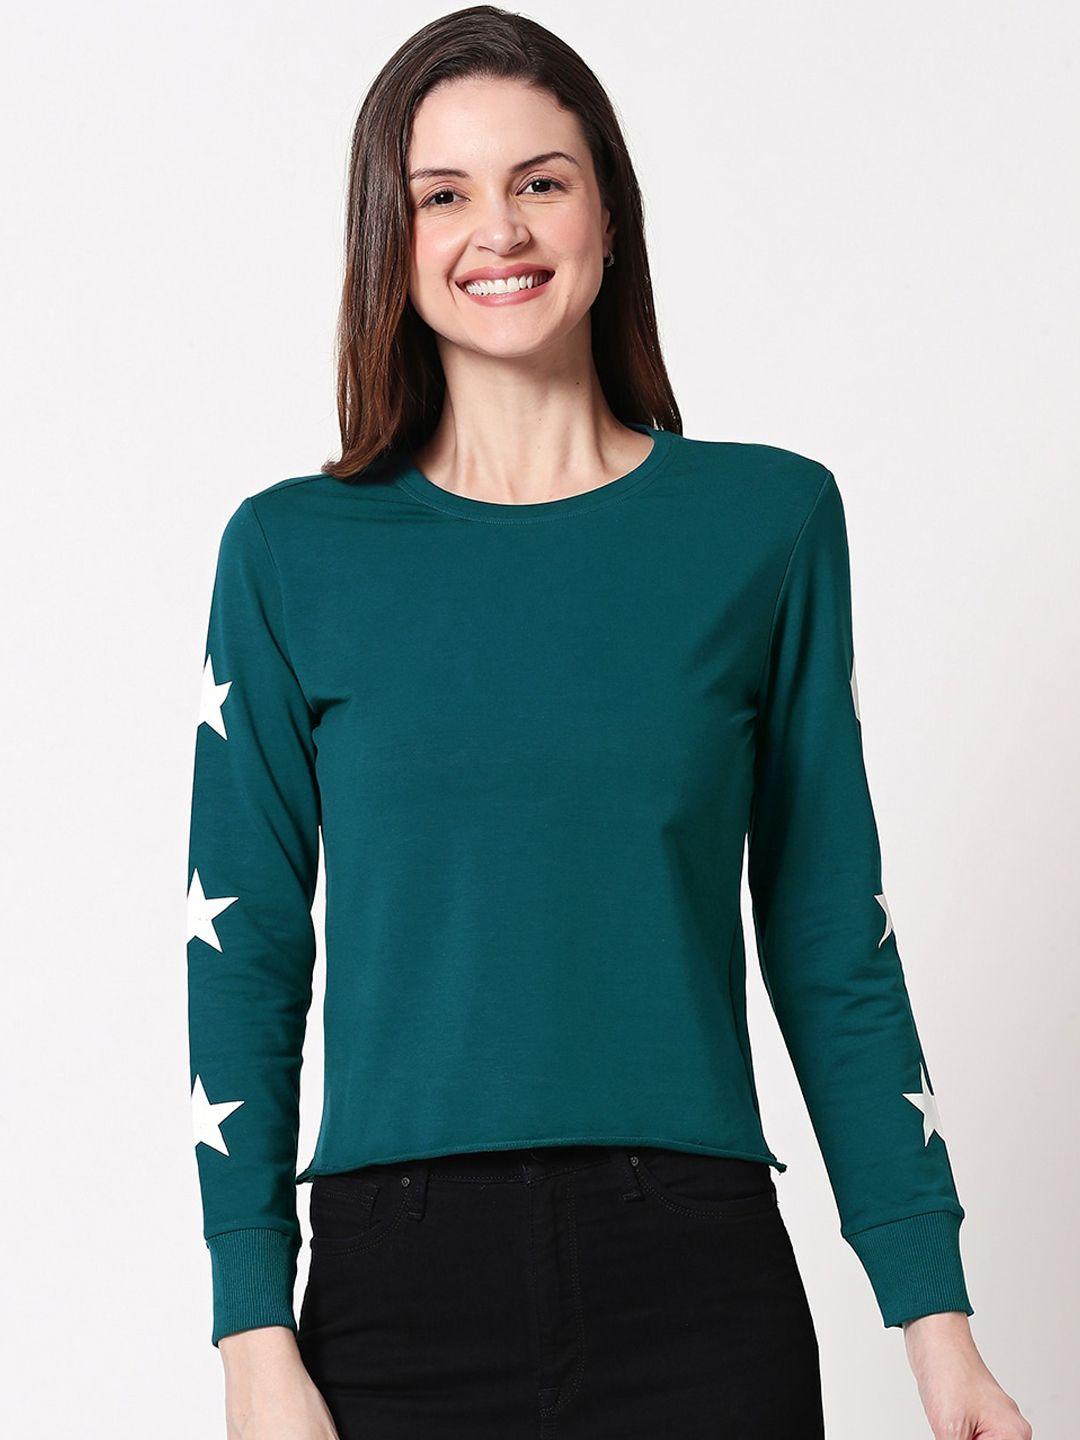 zeyo-green-star-printed-crop-top